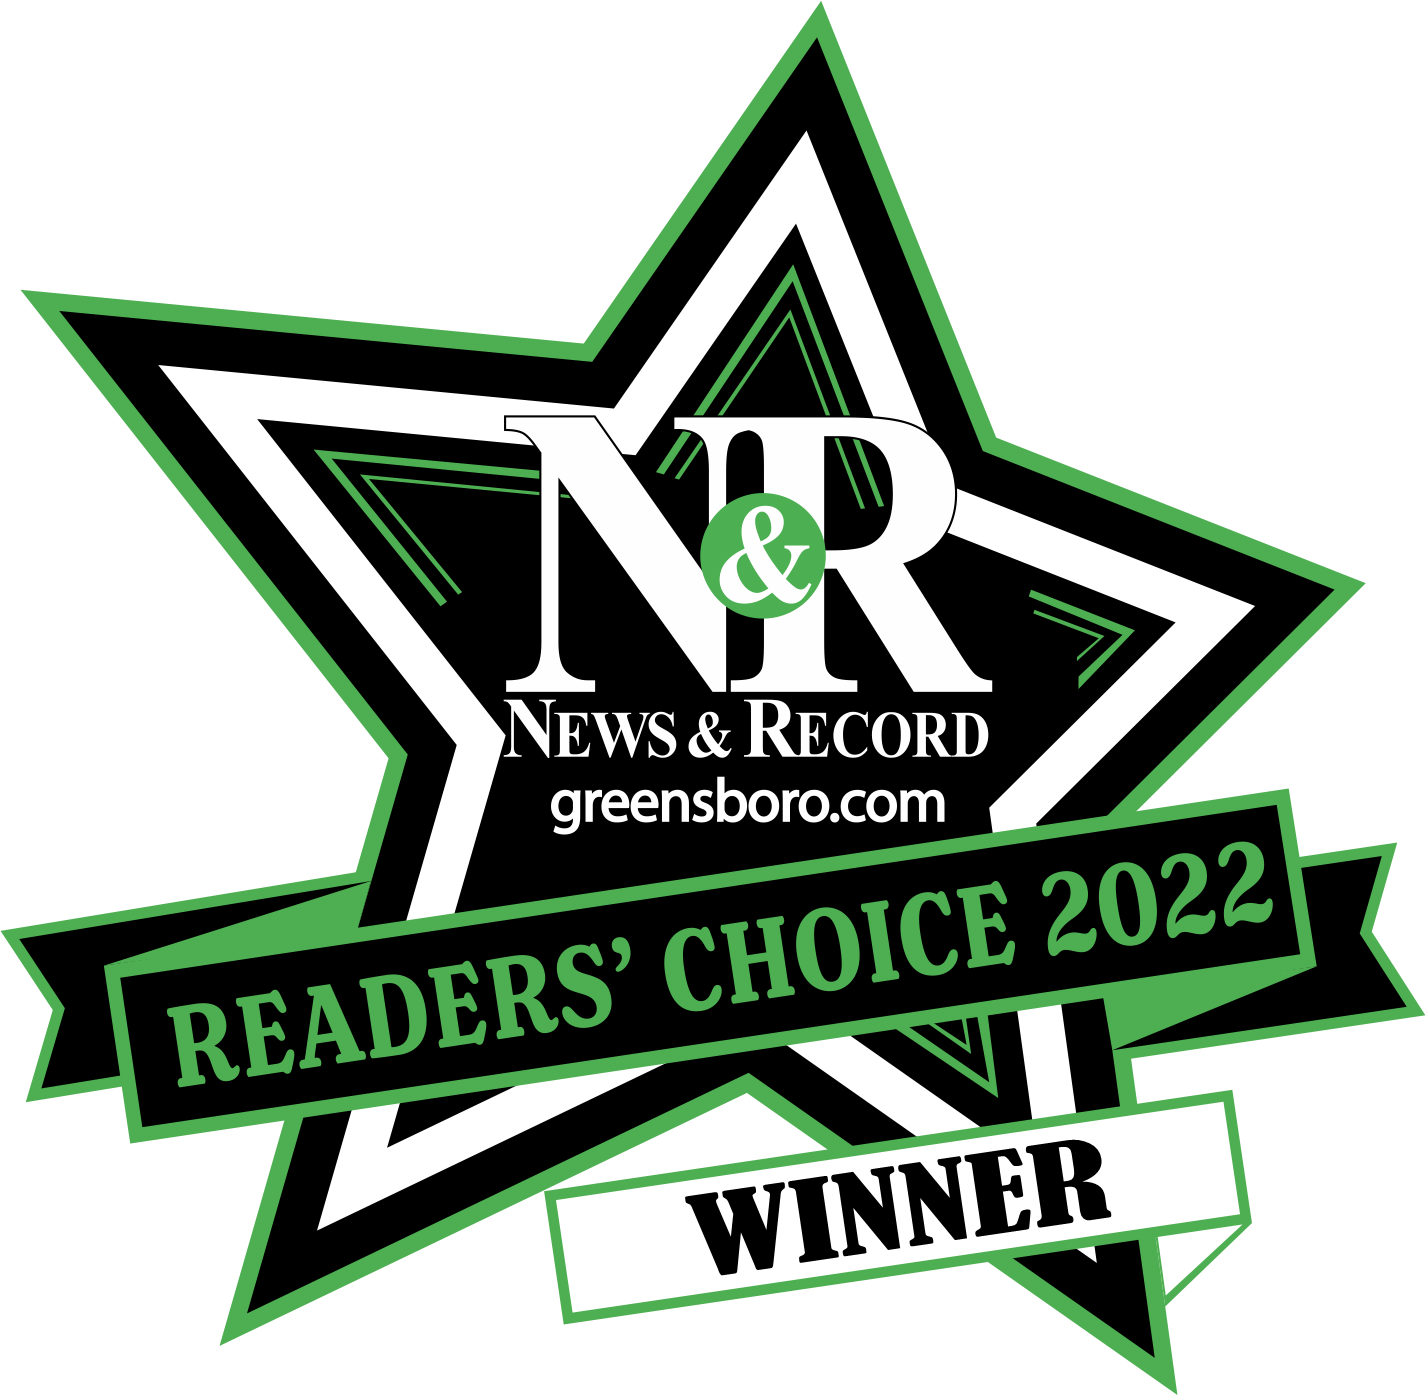 Cleaner World Best Of Greensboro choice winner